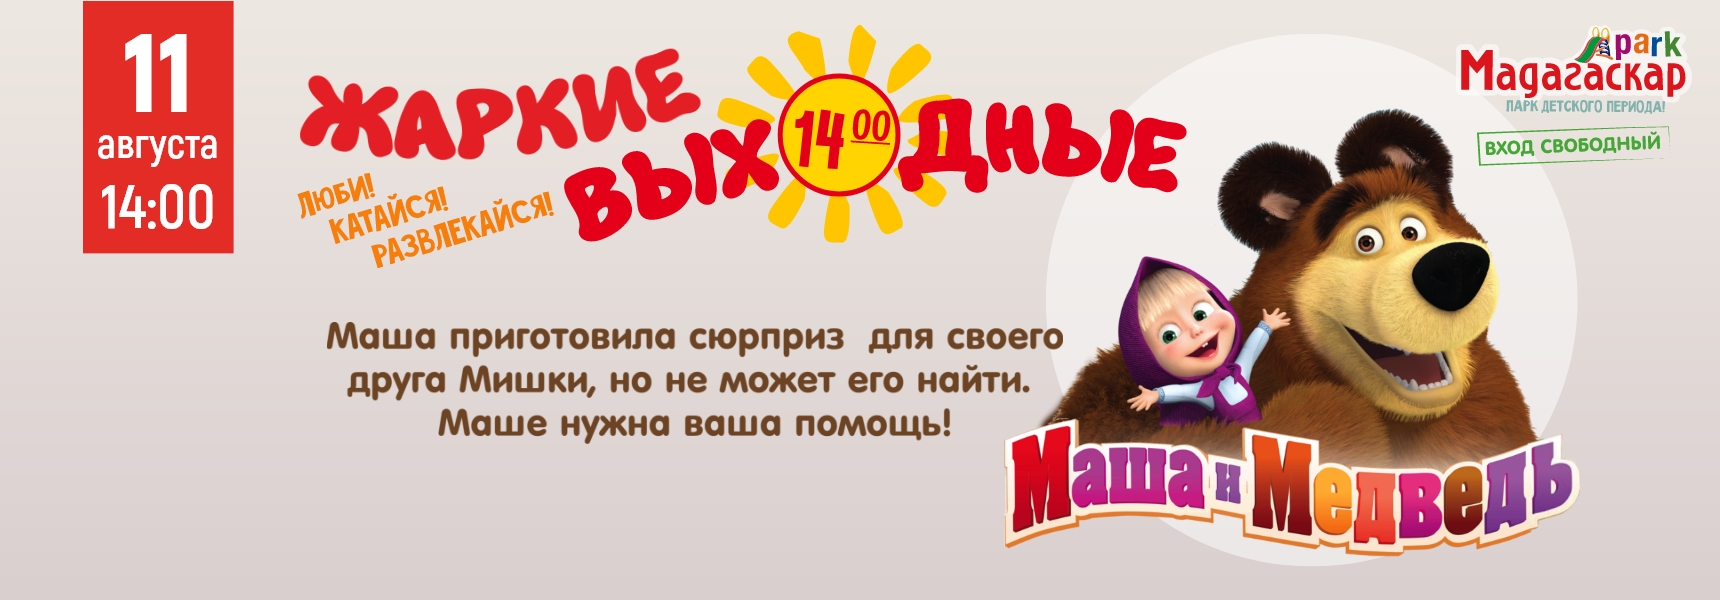 11 августа  любимые герои из мультфильма, Маша и Медведь - Мадагаскар Чебоксары